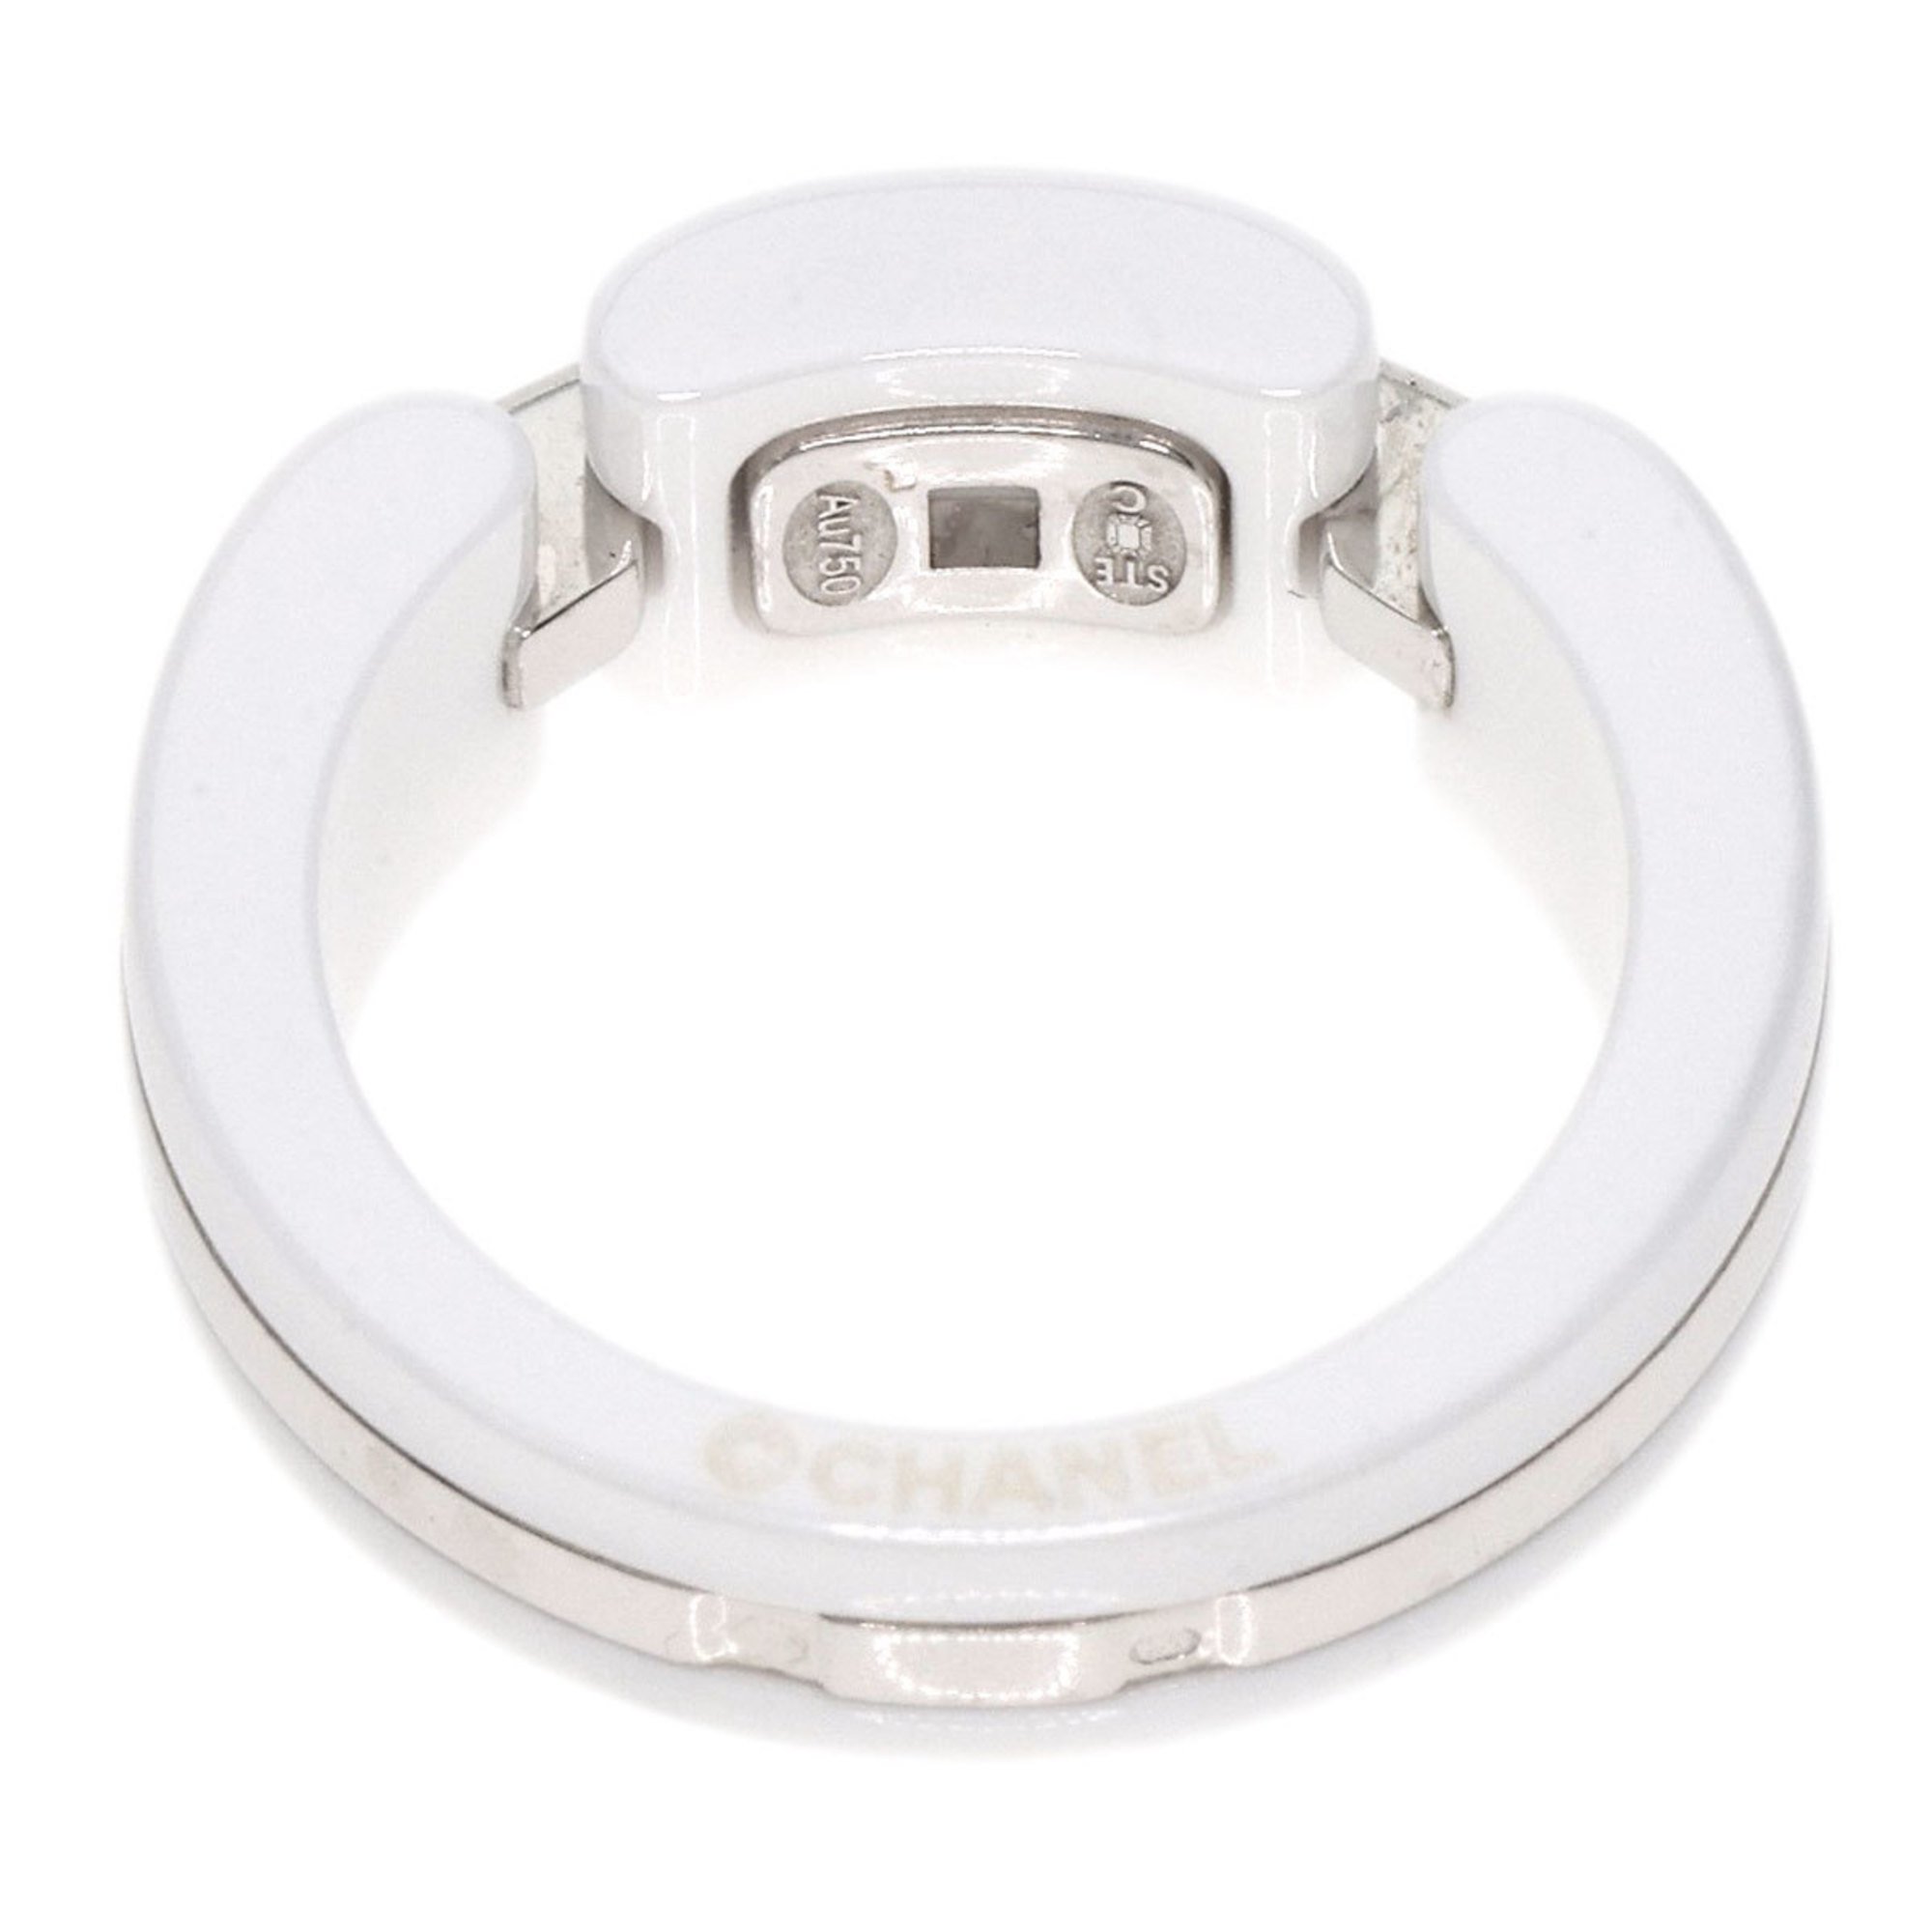 CHANEL Ultra Ring Medium K18 White Gold/Ceramic Women's